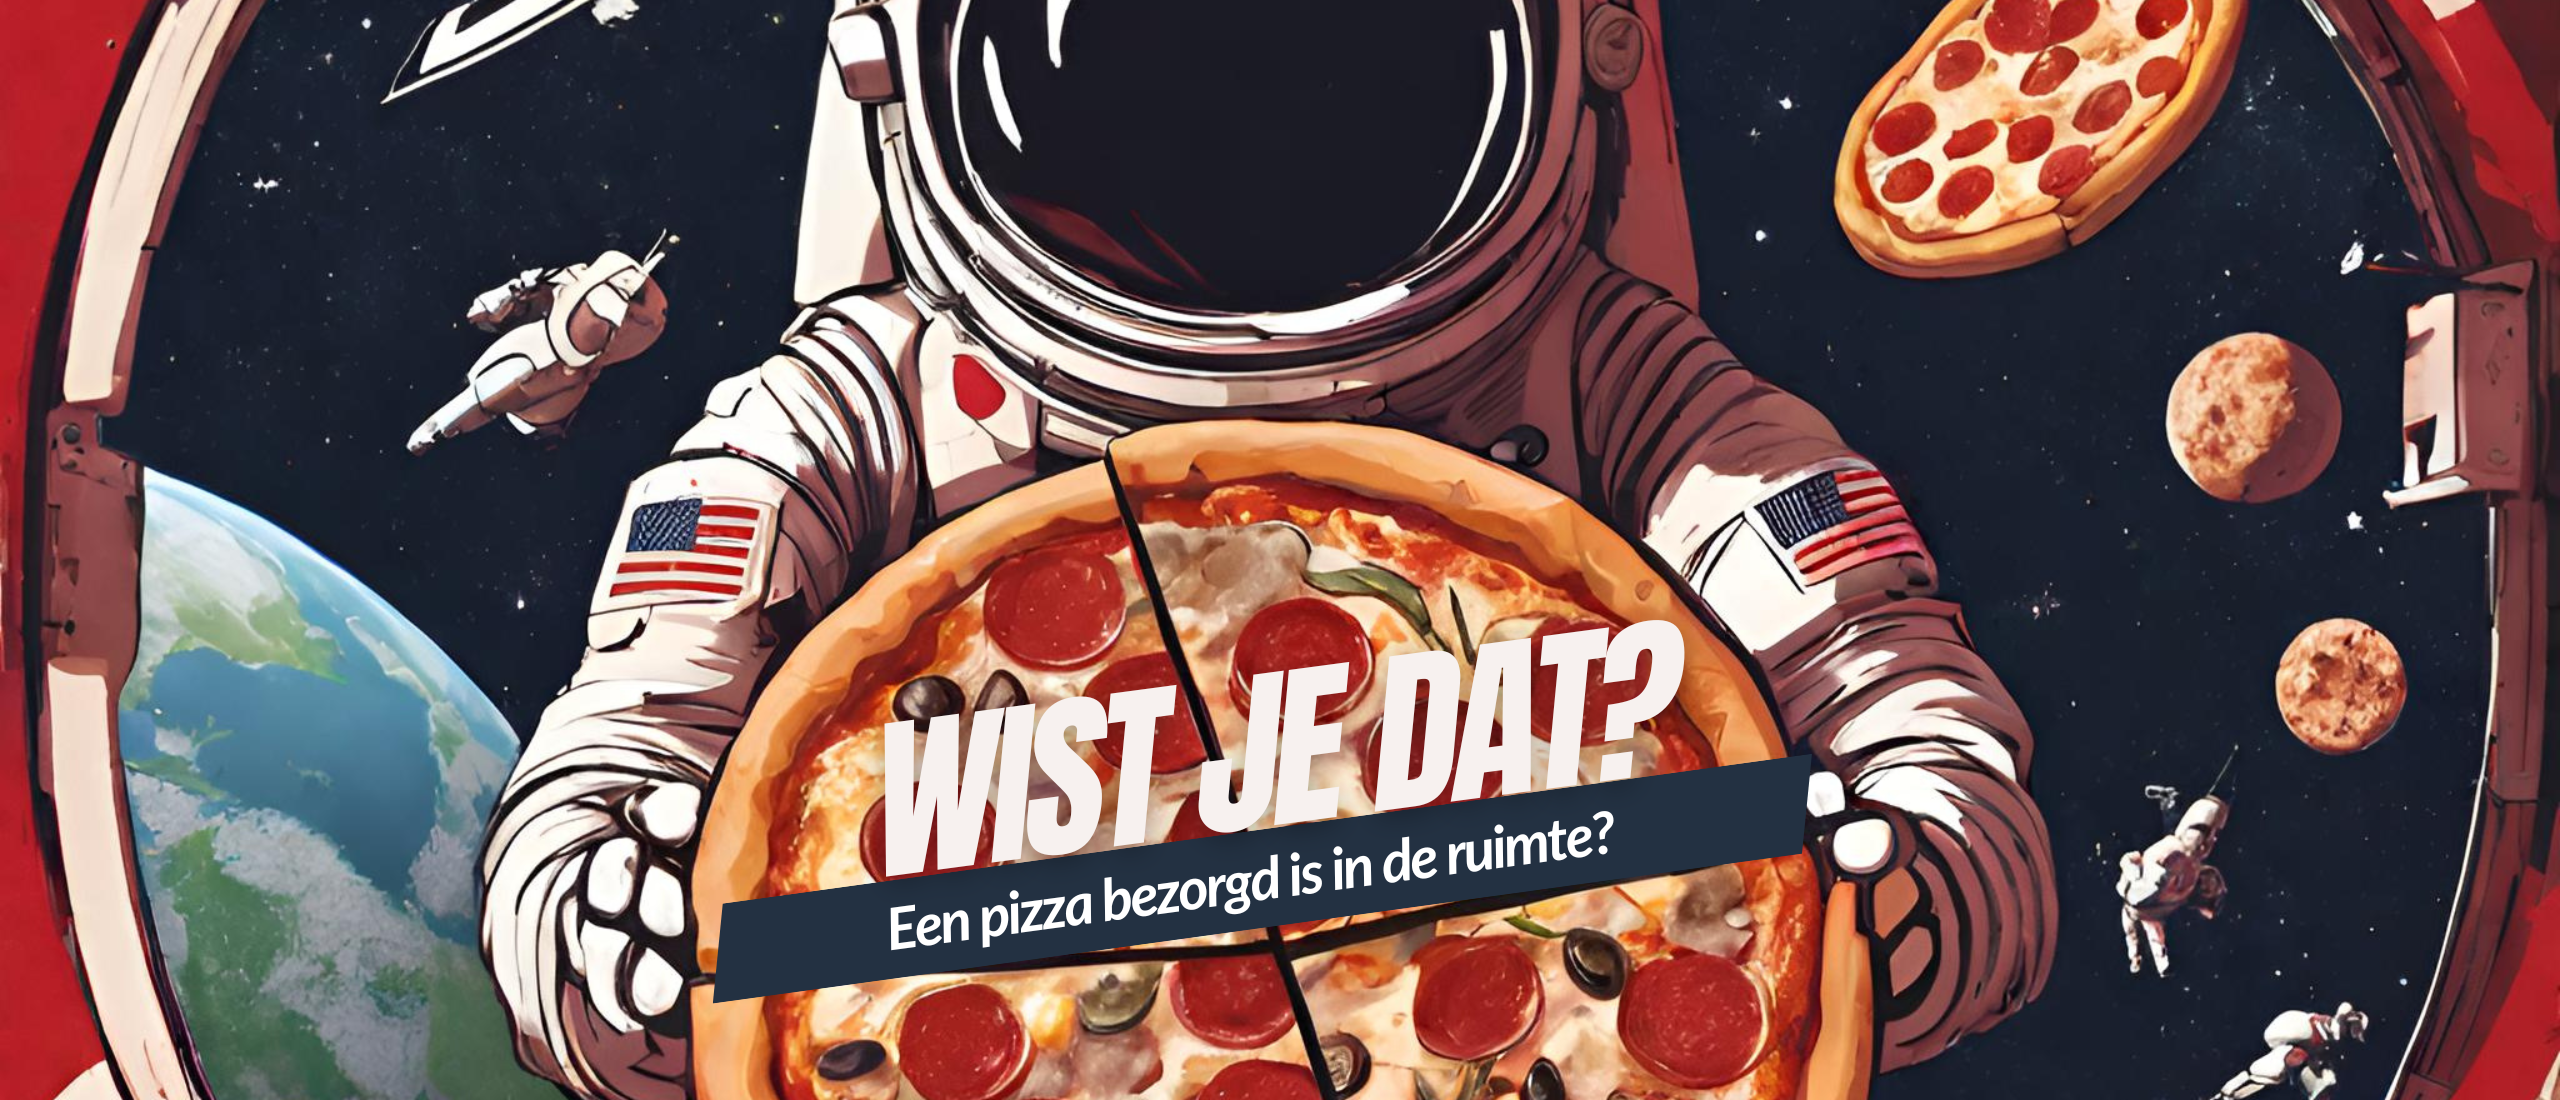 Wist je dat, een pizza bezorgt is in de ruimte?